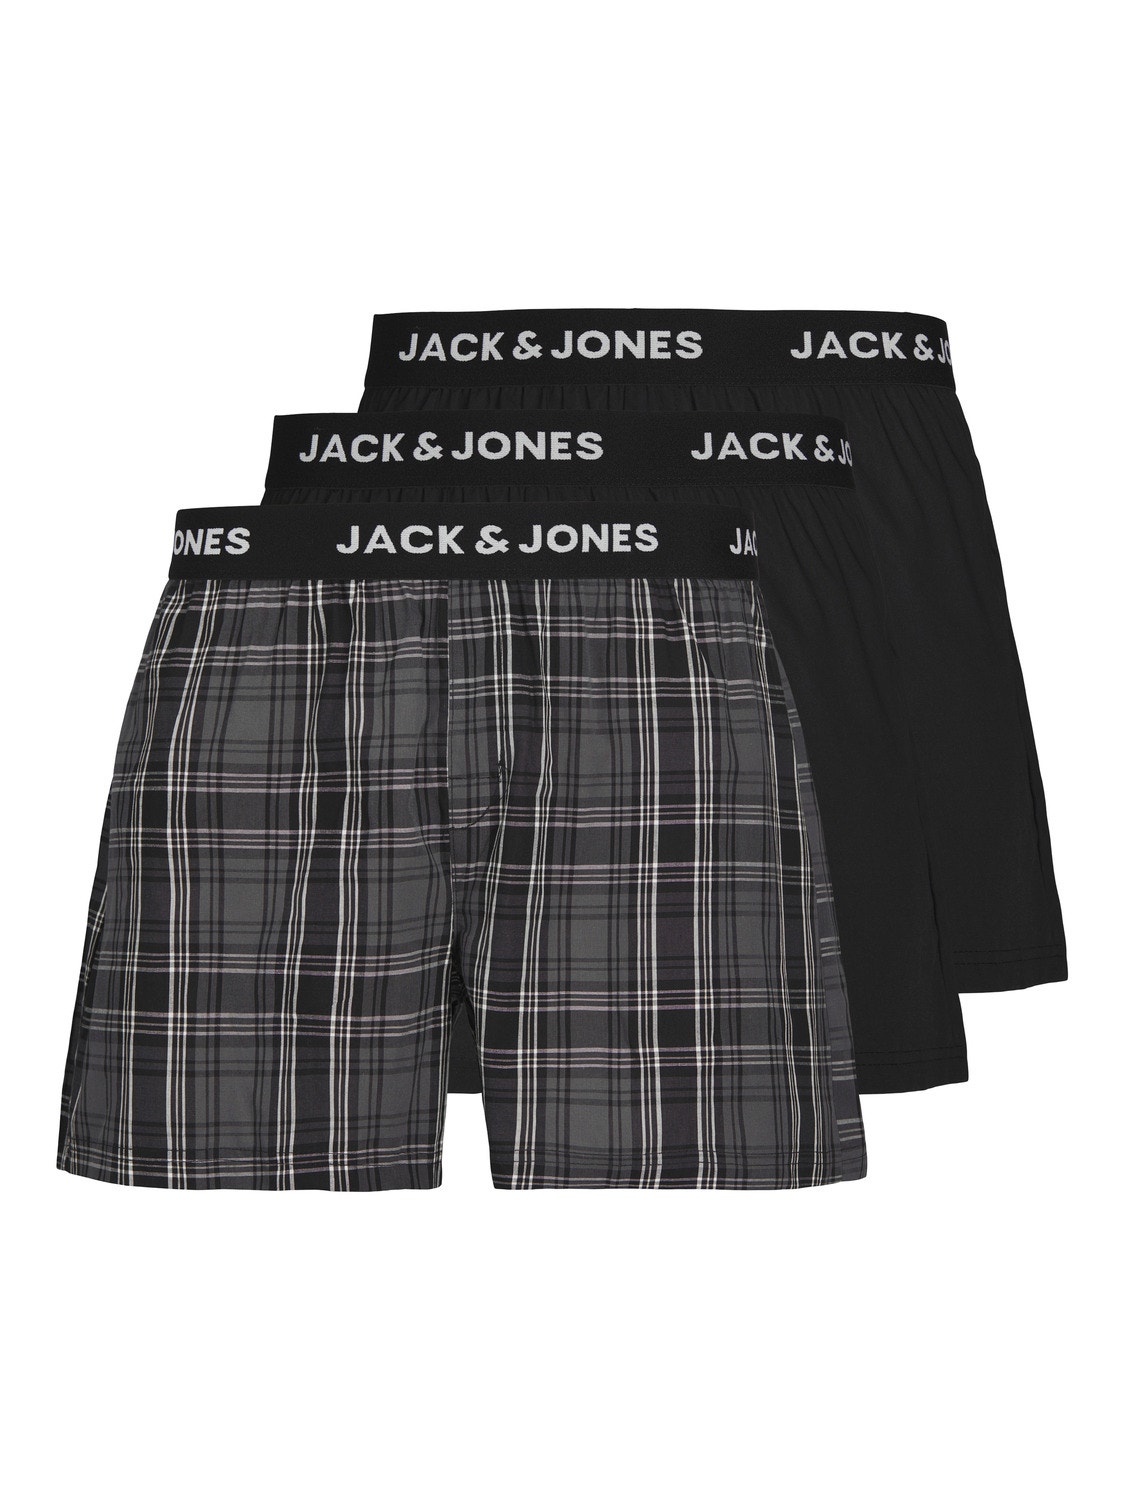 Jack & Jones Pack de 3 Boxer -Black - 12253686